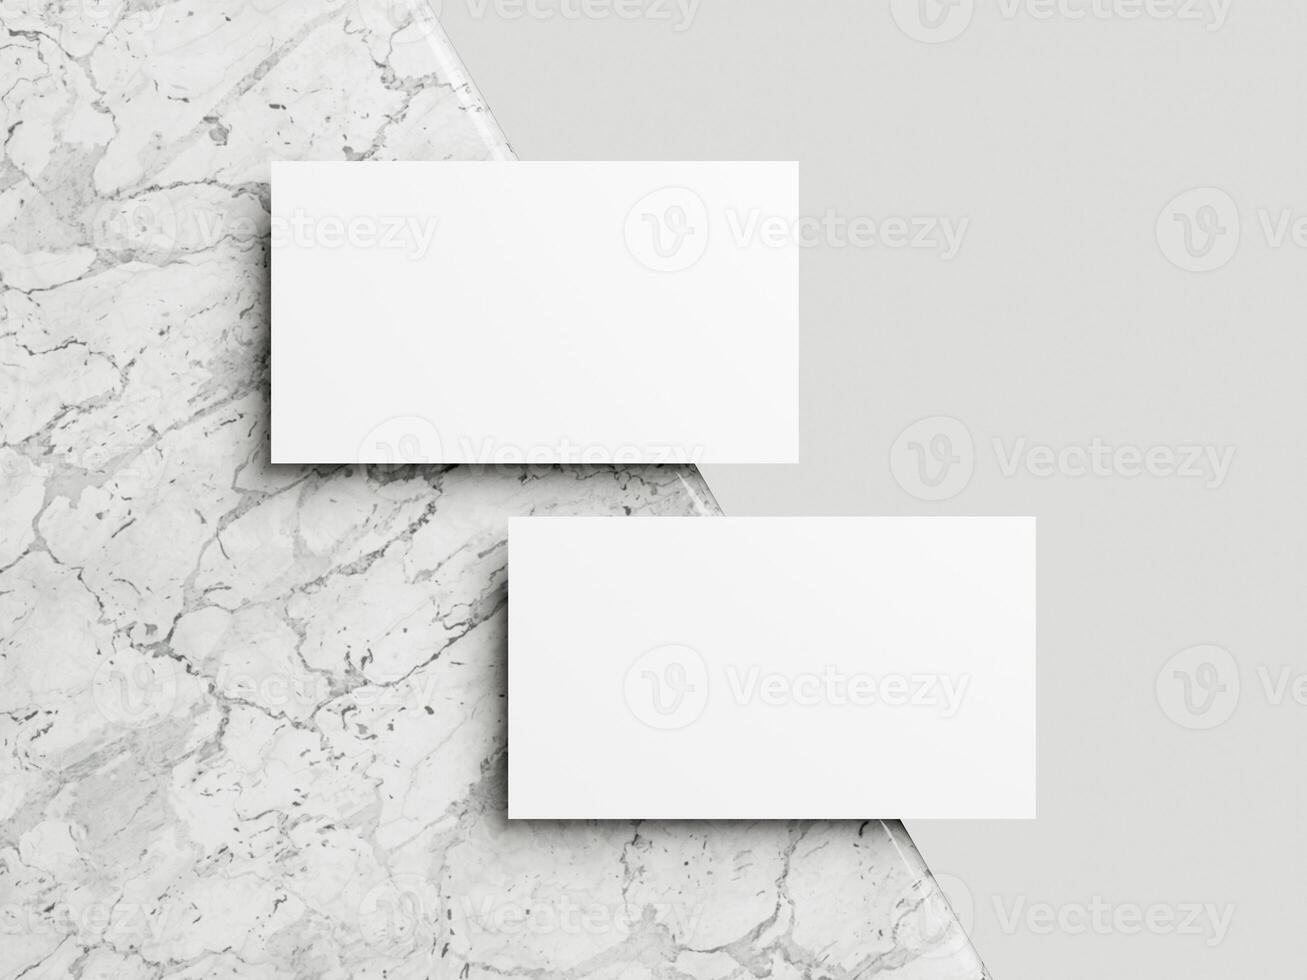 blanco blanco negocio tarjeta Bosquejo en mármol antecedentes 3d hacer ilustración para burlarse de arriba y diseño presentación. foto